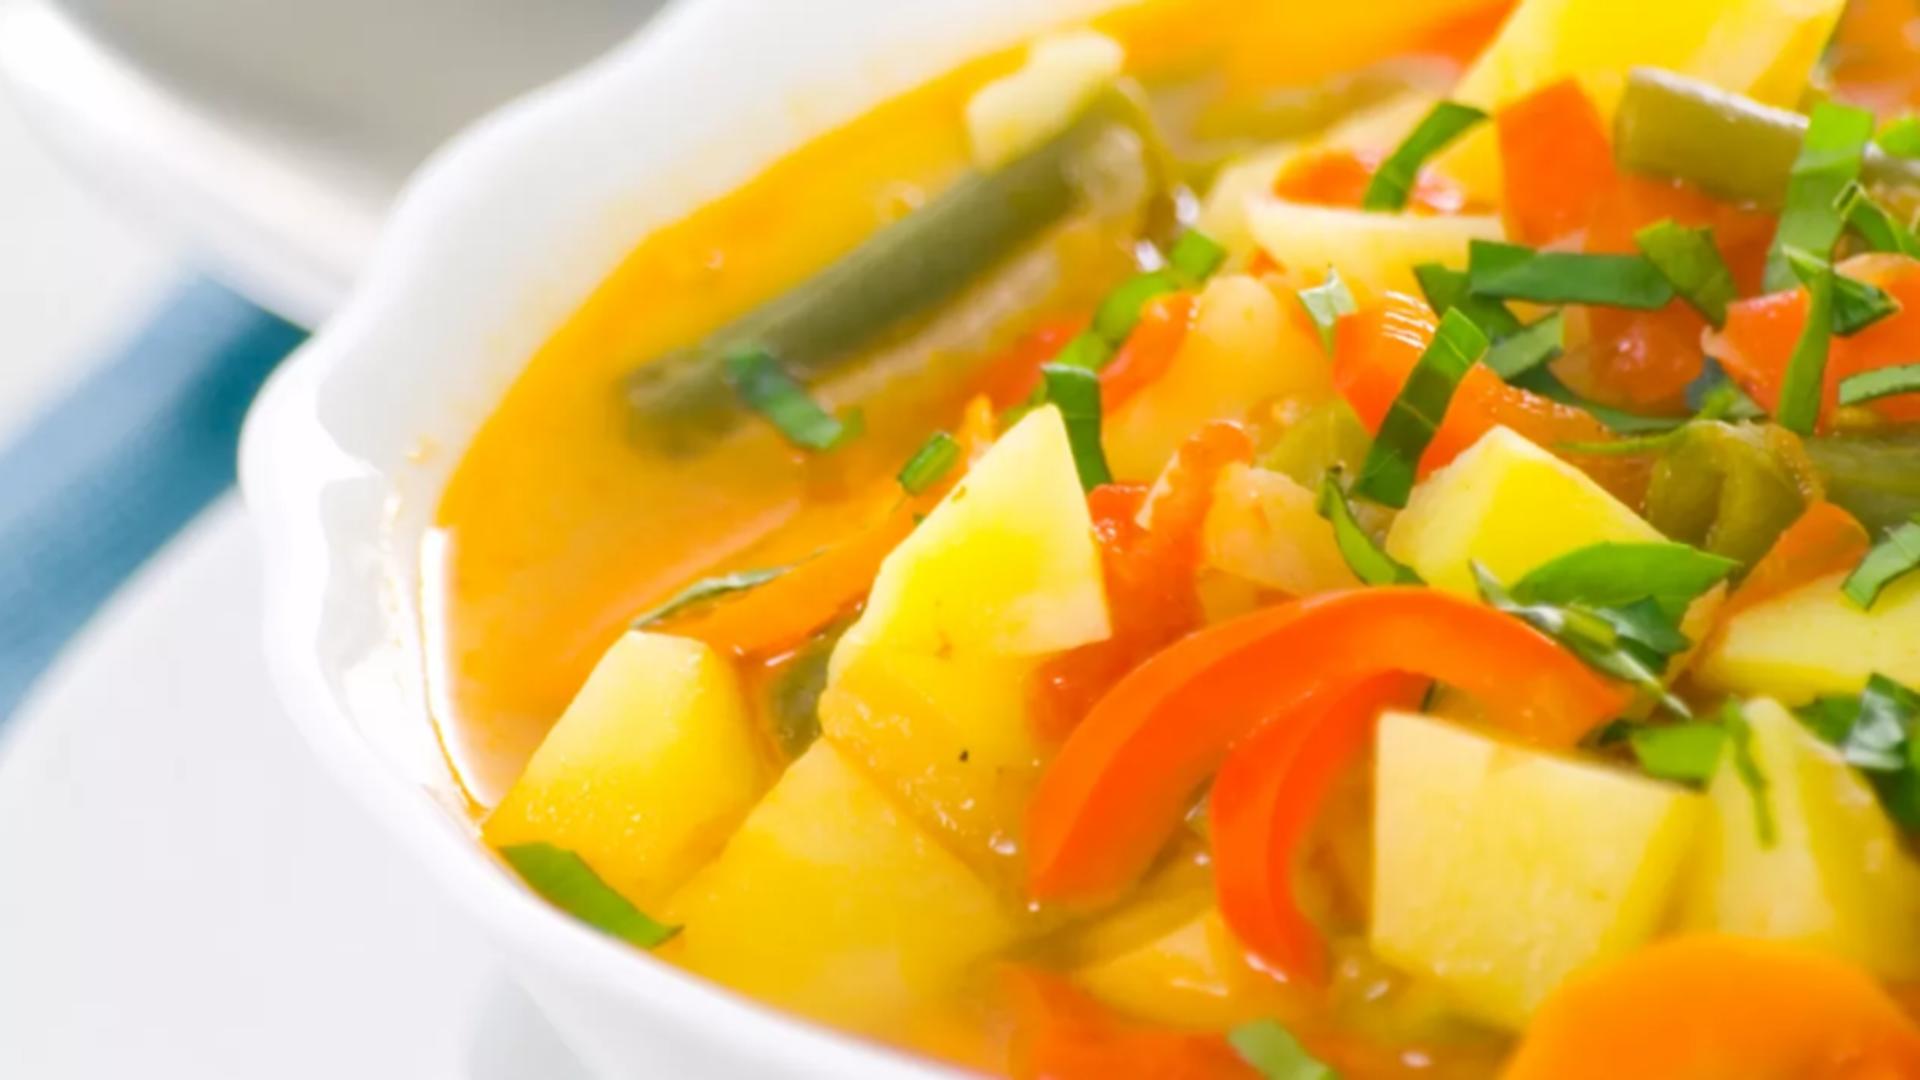 Ce putem face cu legumele rămase din supă, în loc să le aruncăm